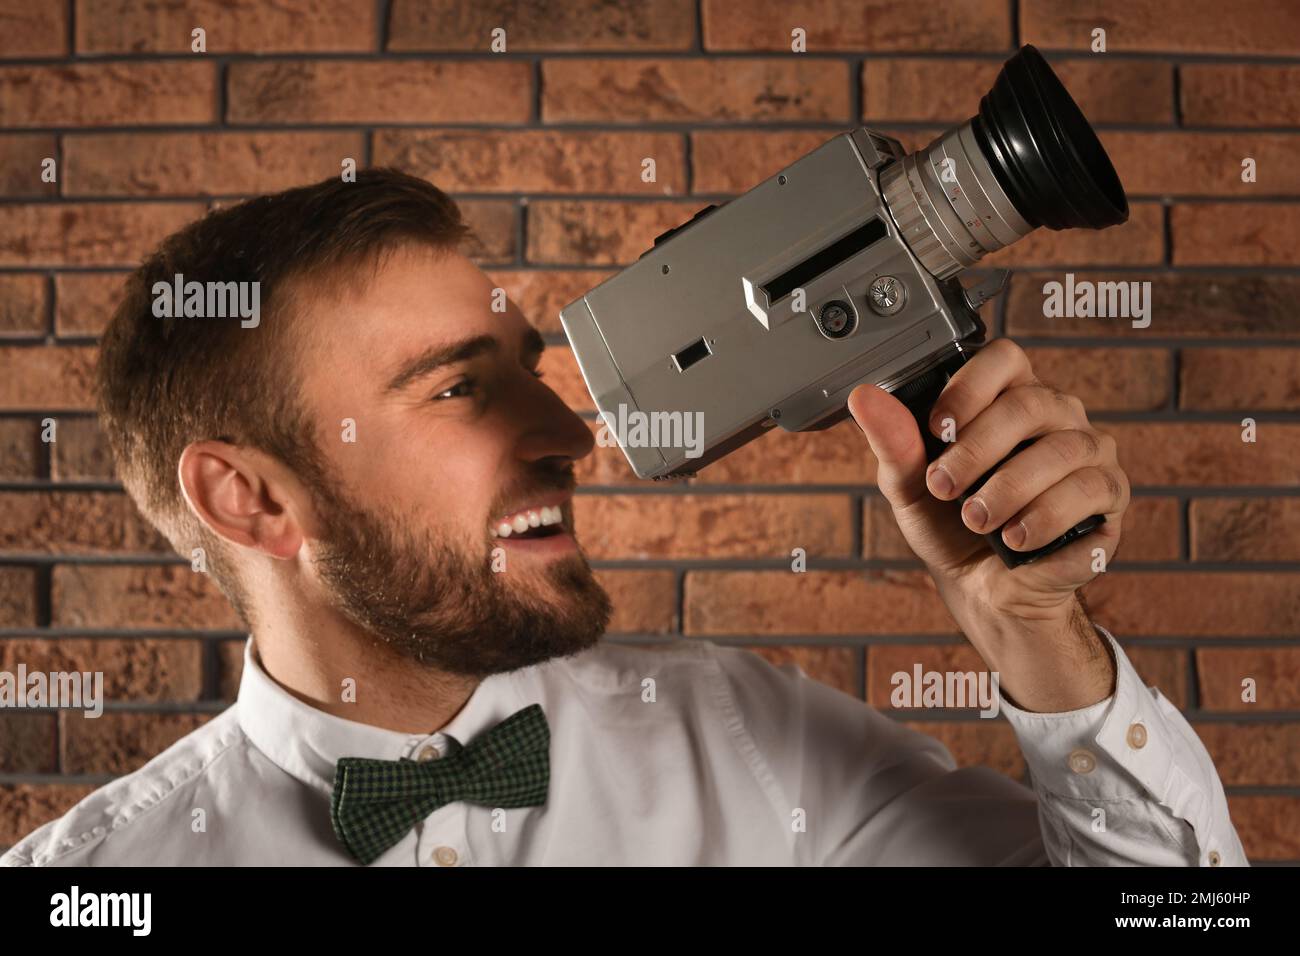 Action man videocamera cameraman fotografías e imágenes de alta resolución  - Página 2 - Alamy